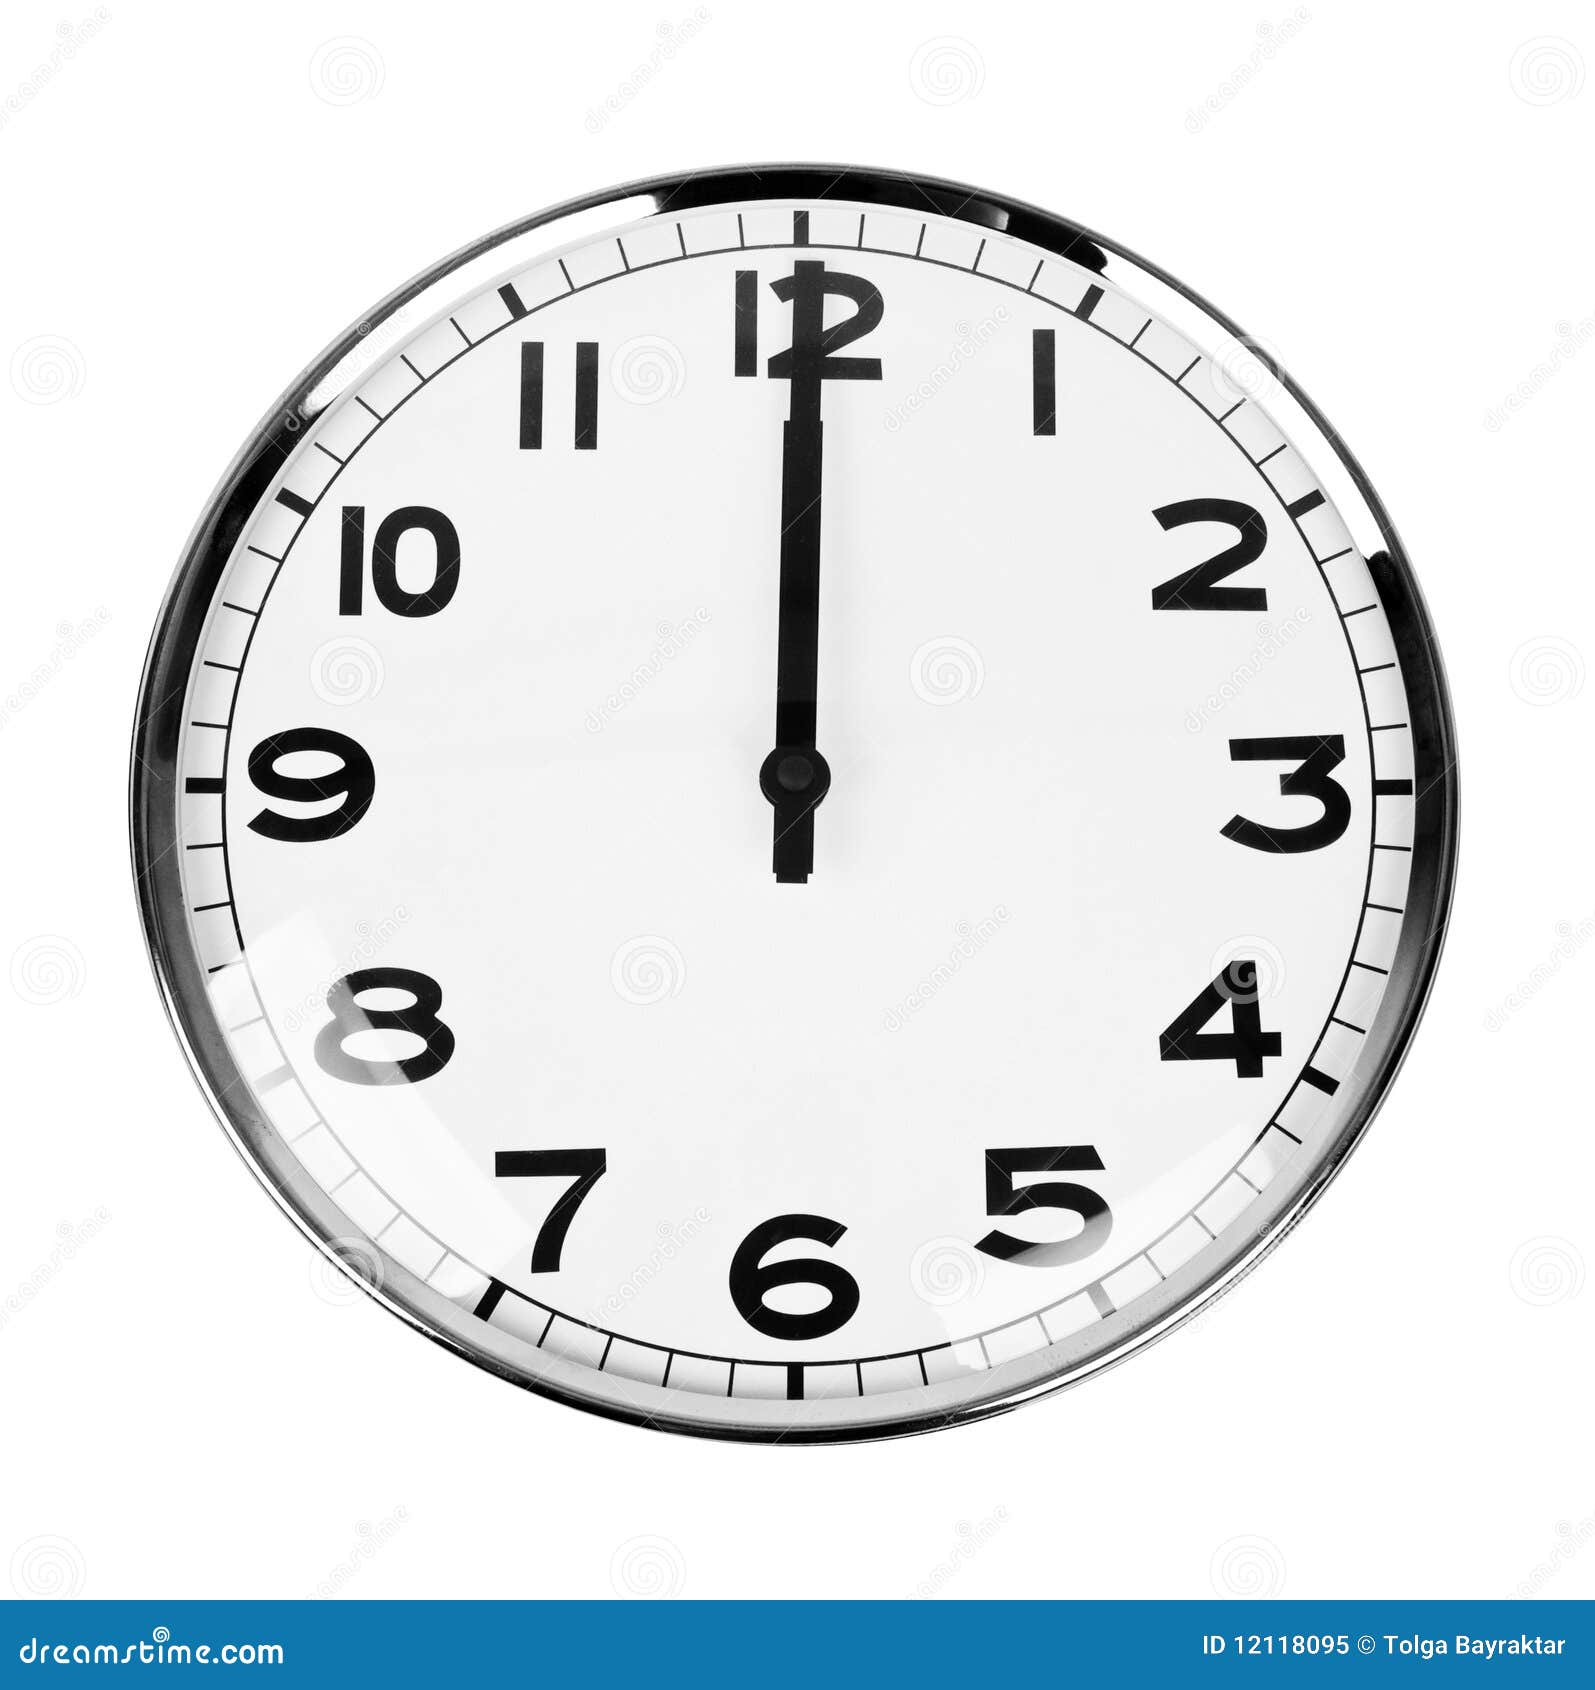 Картинка часы 12. Часы показывают 12 часов. Часы 12 00. Изображение часов со стрелками. Полдень на часах.